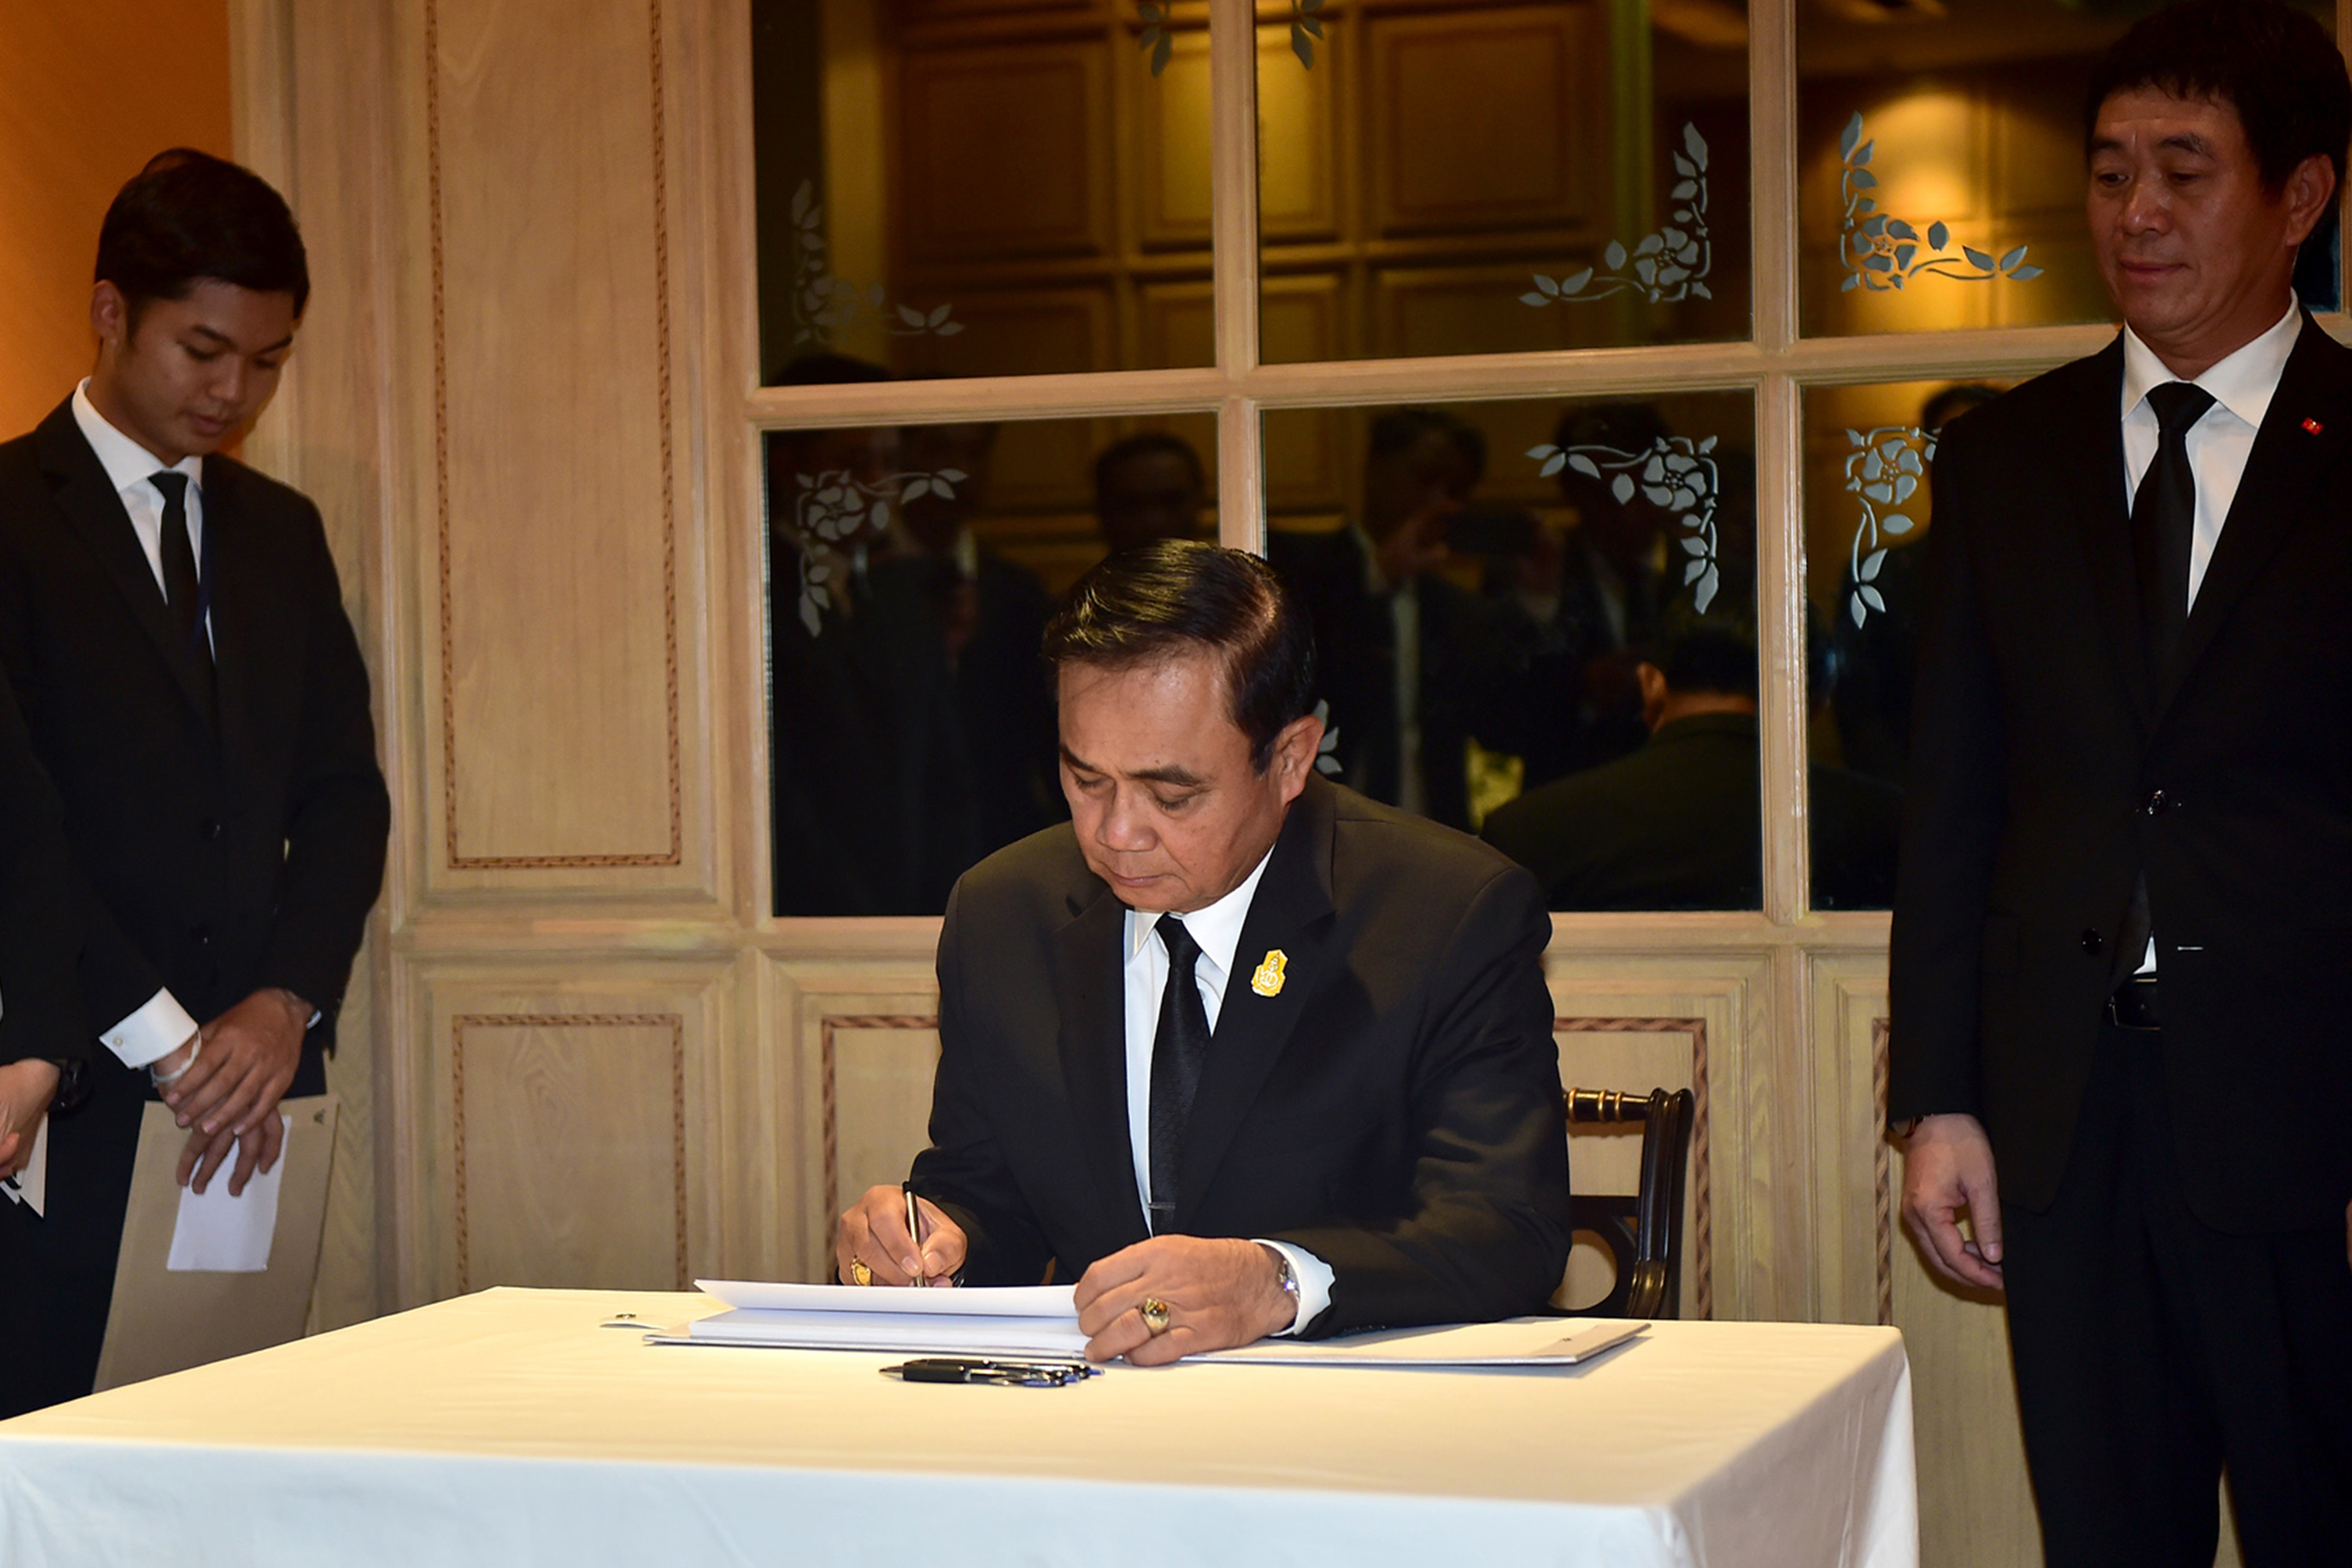 Thaiföld miniszterelnöke érdeklődni kezdett a politika iránt